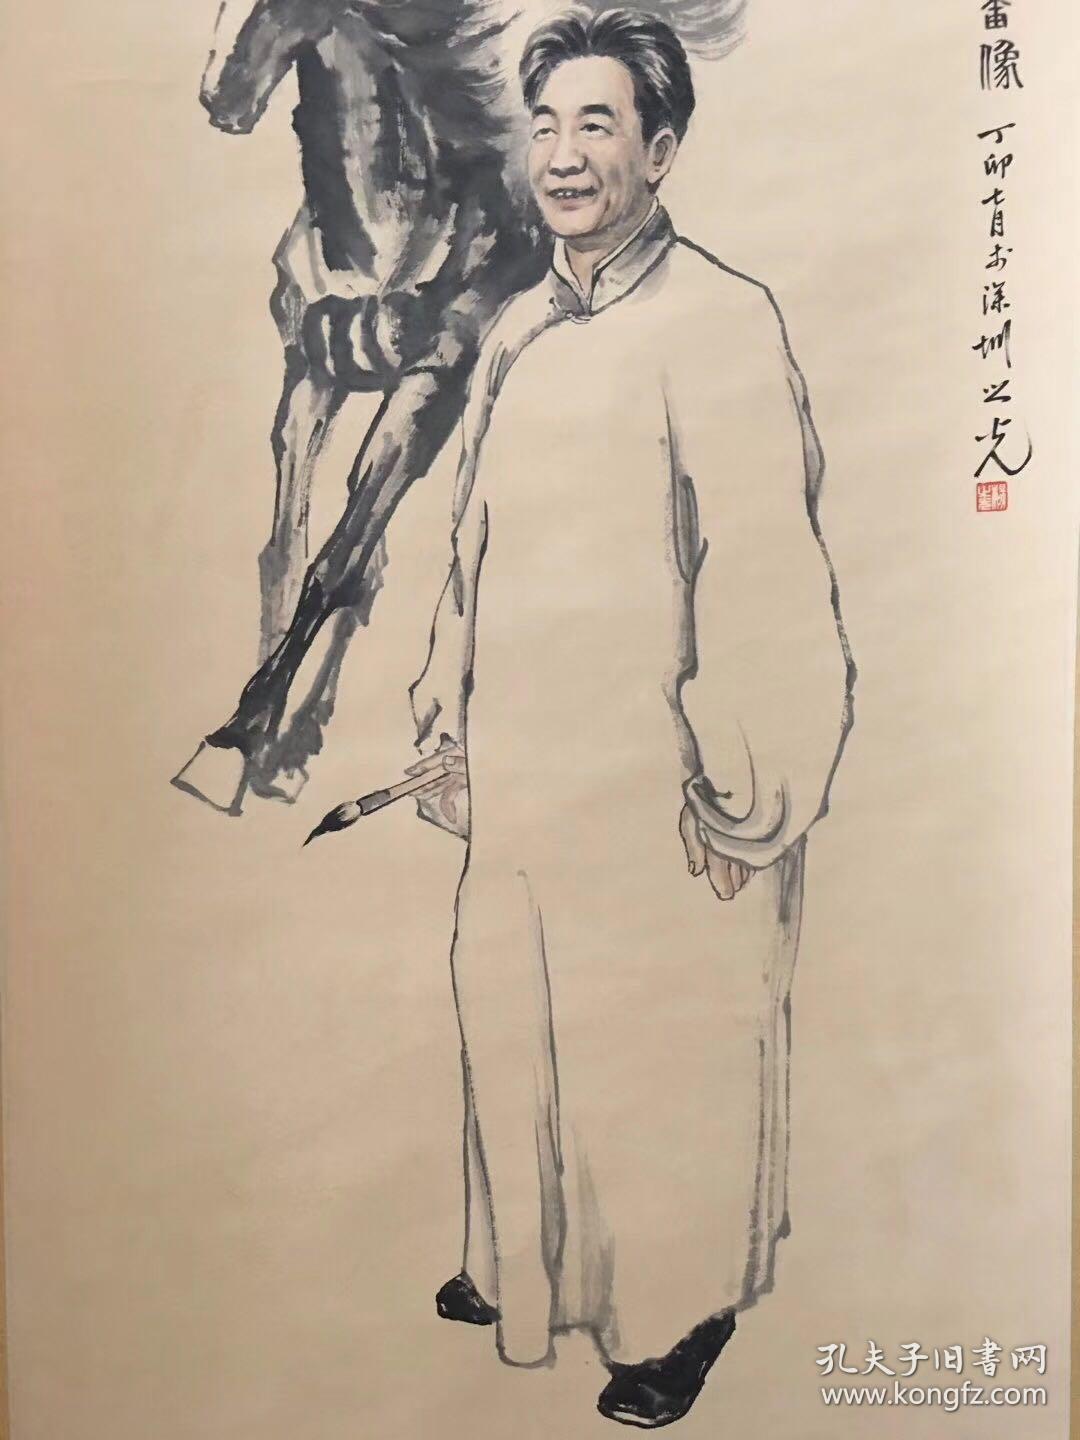 当代名家,精心手绘徐悲鸿先生肖像画一幅.